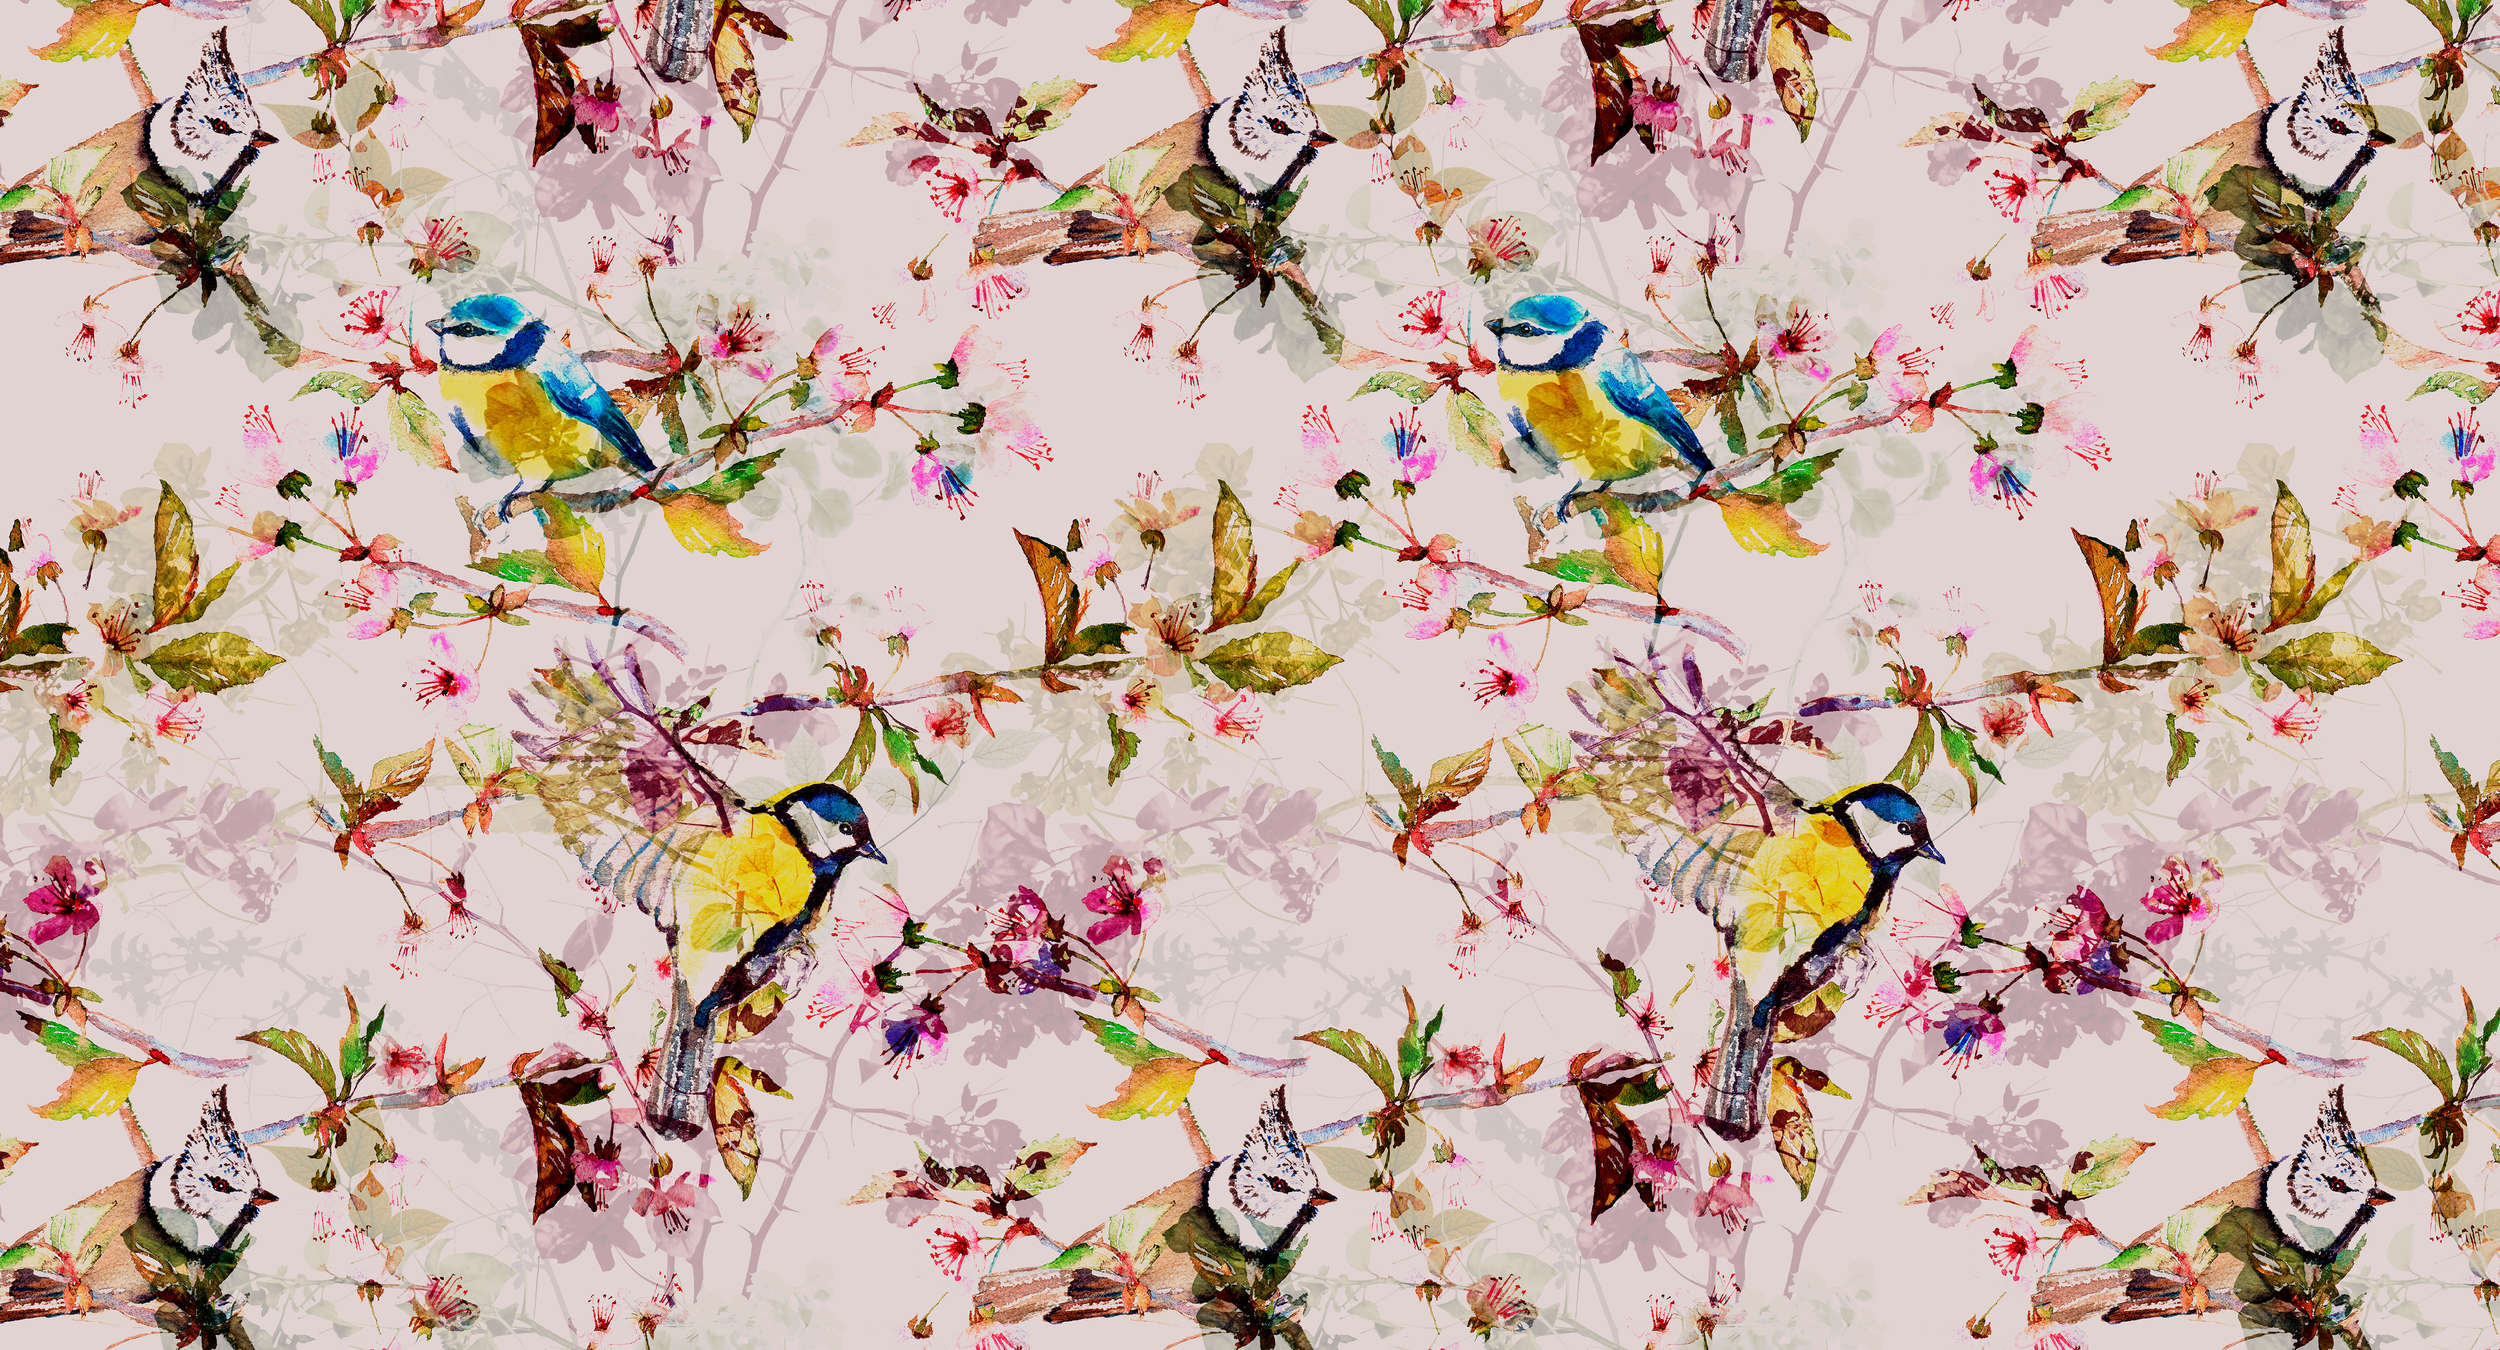             Papel pintado estilo collage de pájaros - rosa, amarillo
        